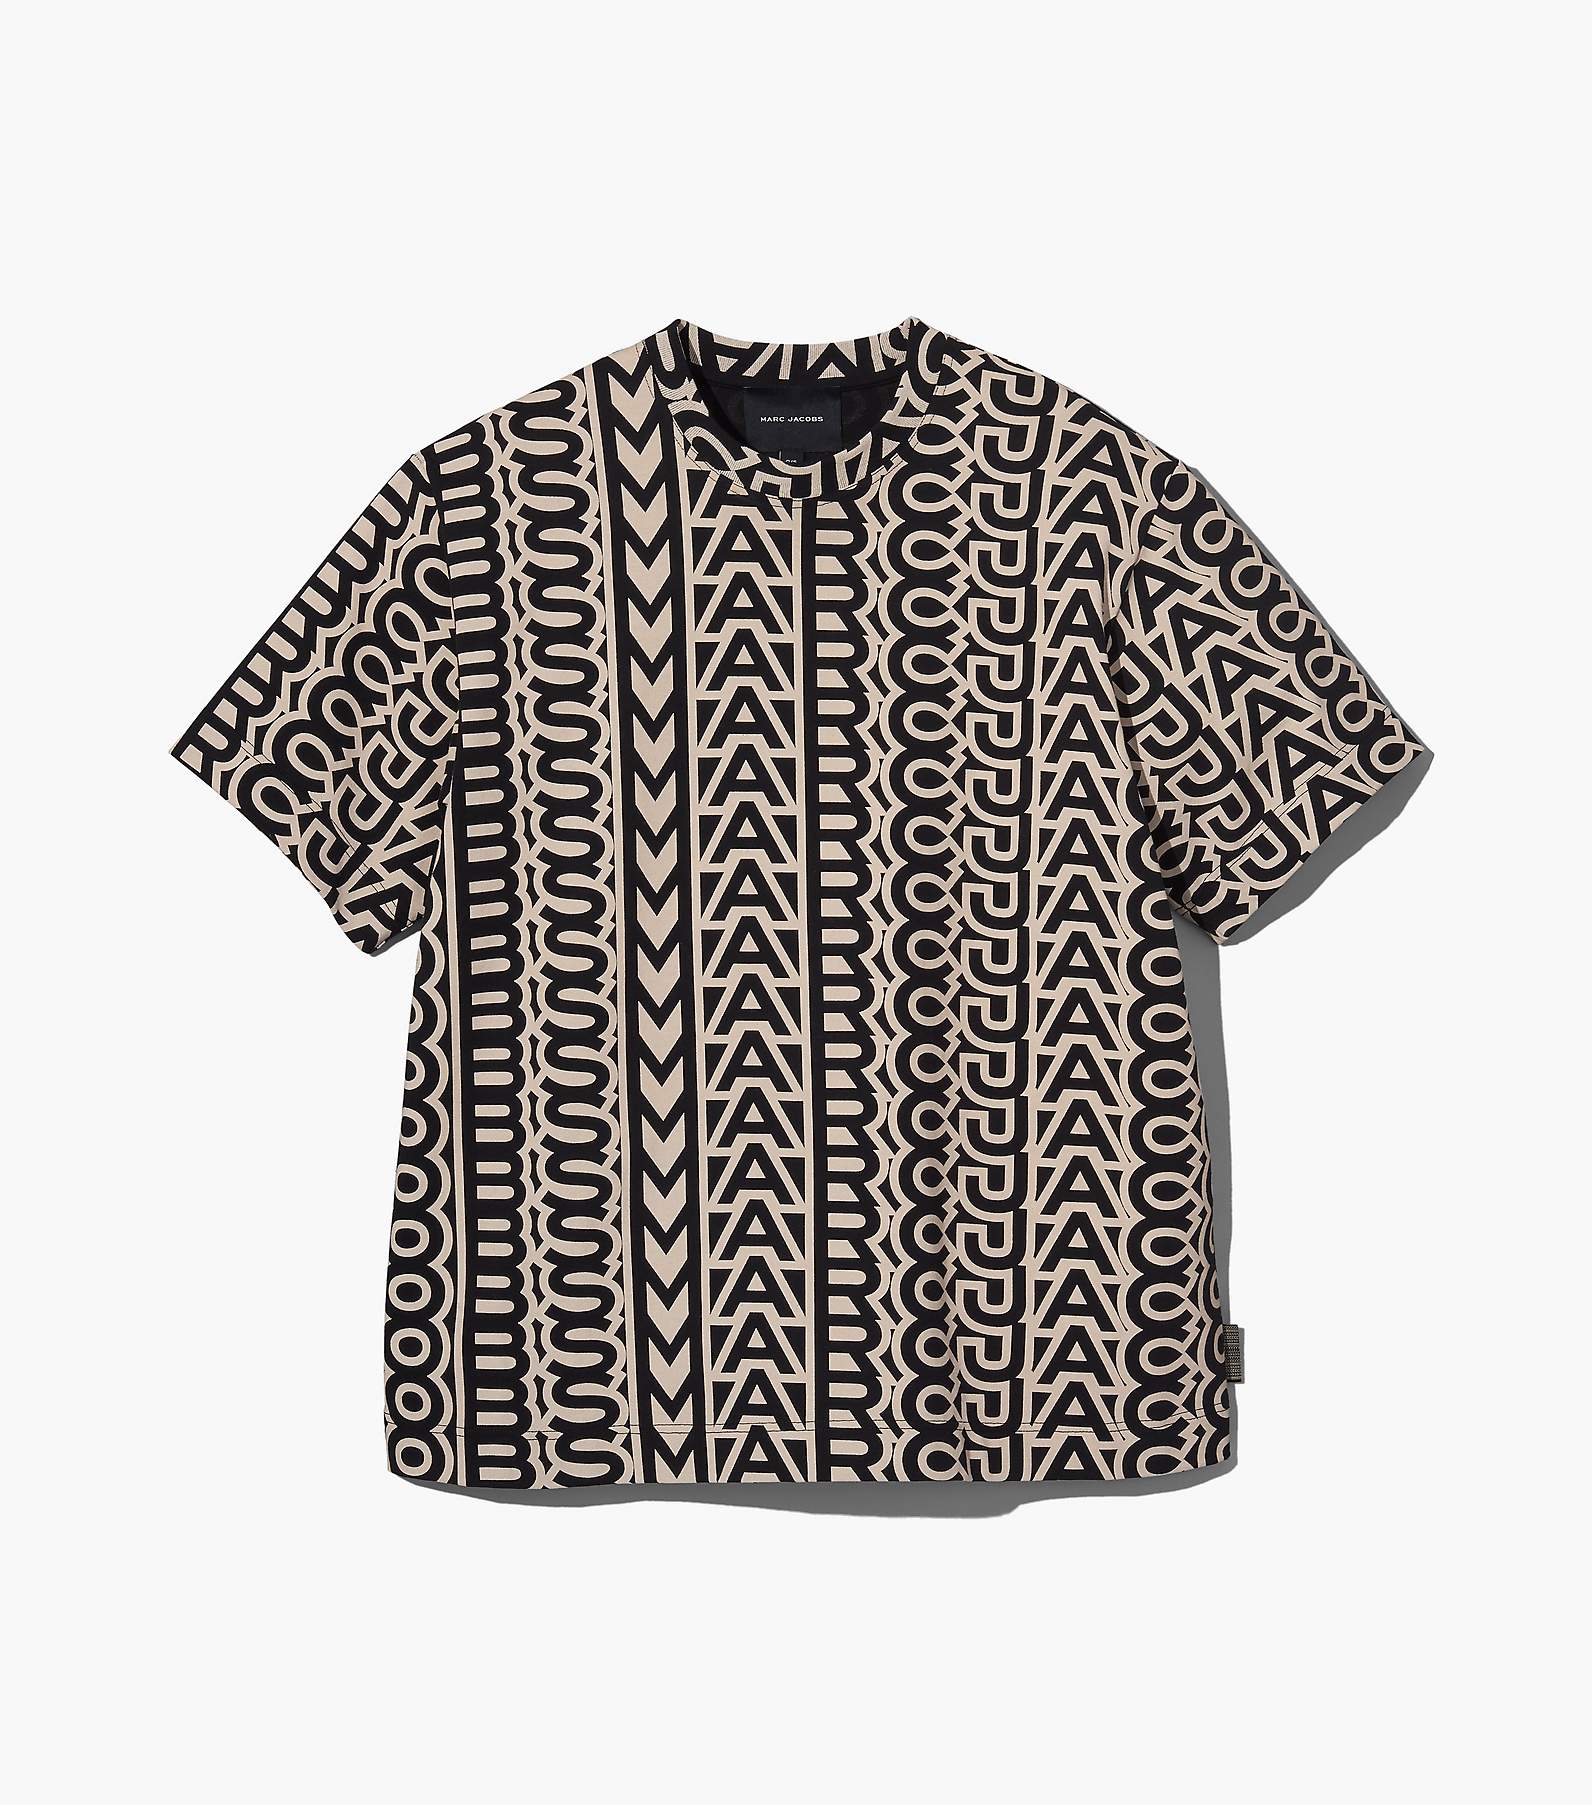 The big monogram cotton t-shirt - Marc Jacobs - Women